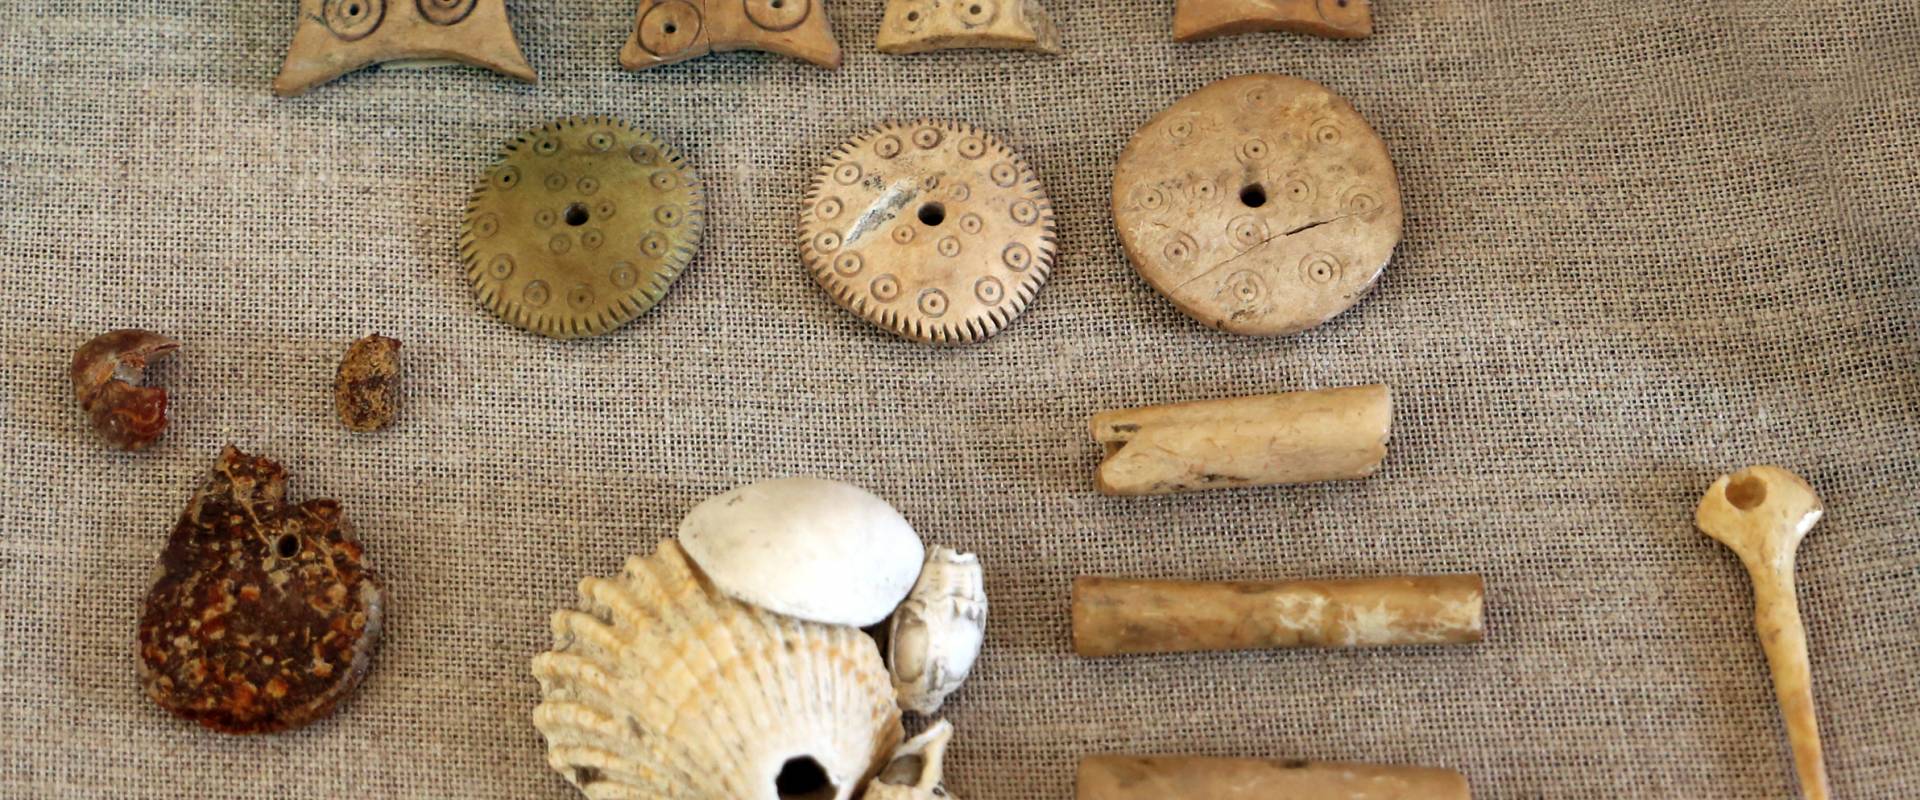 Bronzo recente, manufatti in osso, monili in cocnhiglia e ambra, dalla terramara di forno del gallo e beneceto photo by Sailko